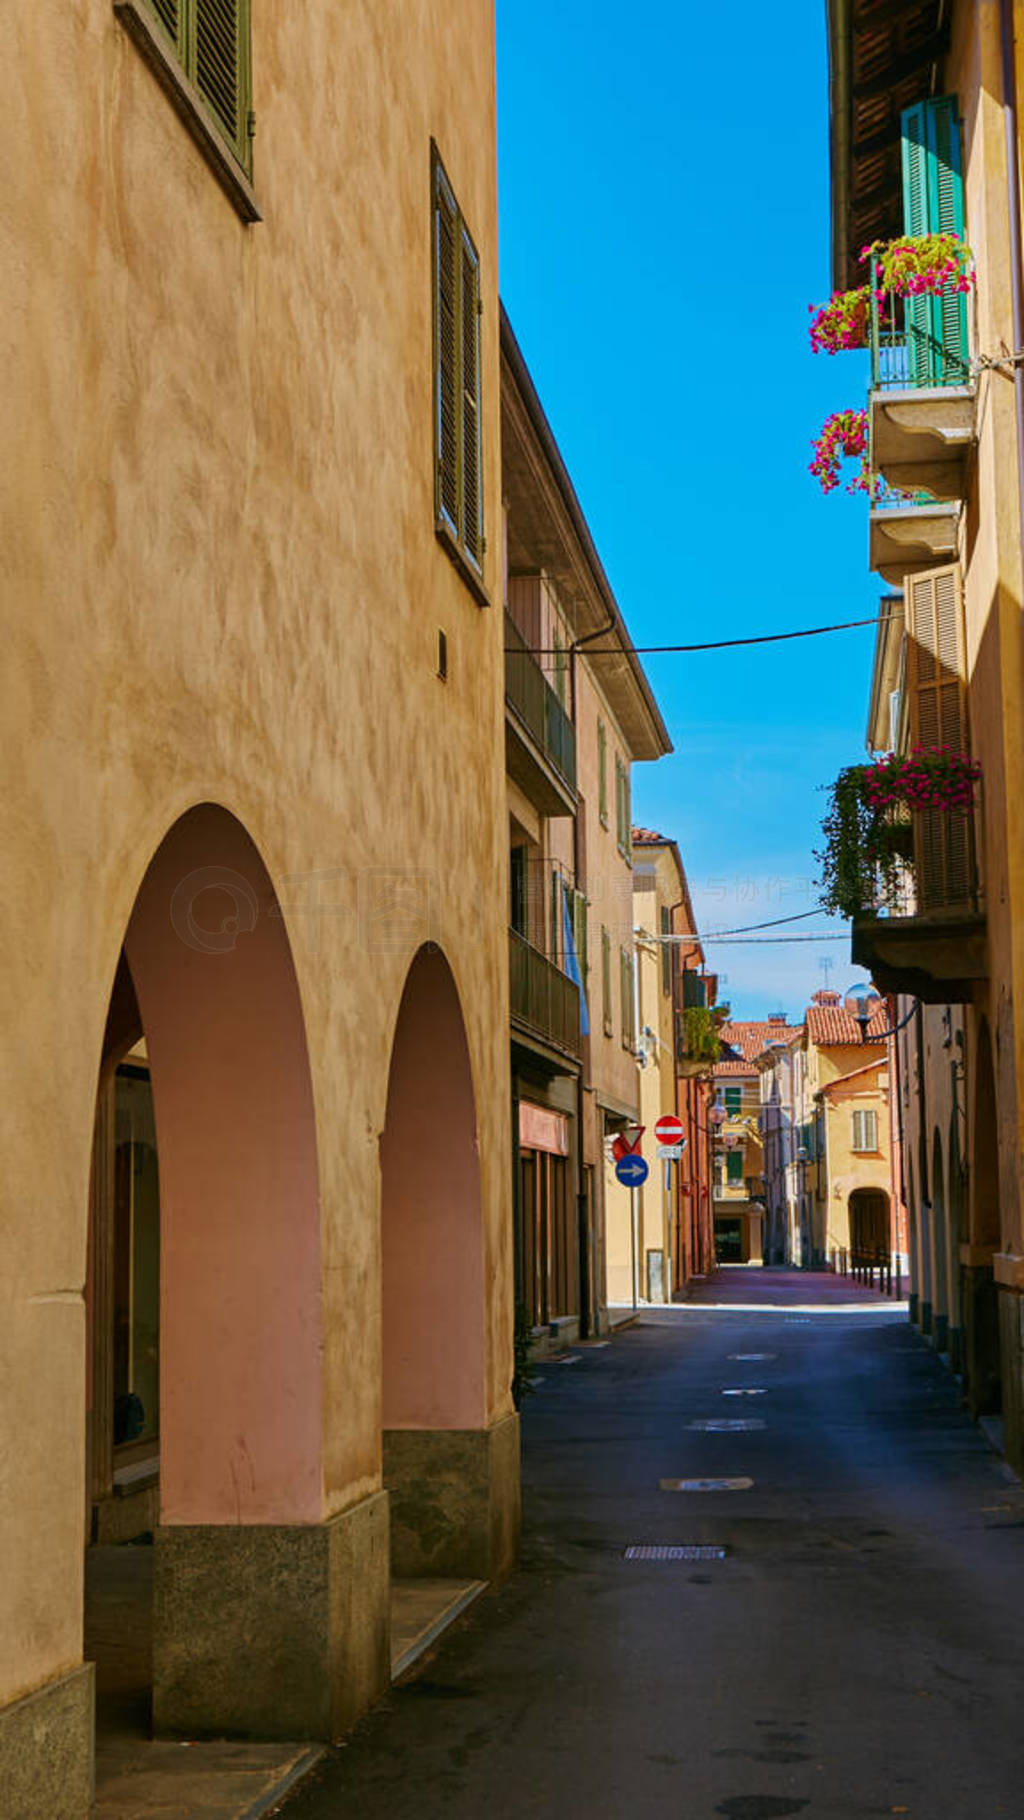 Empty Street in the Italian town Fossano in Province Cuneo, Regi